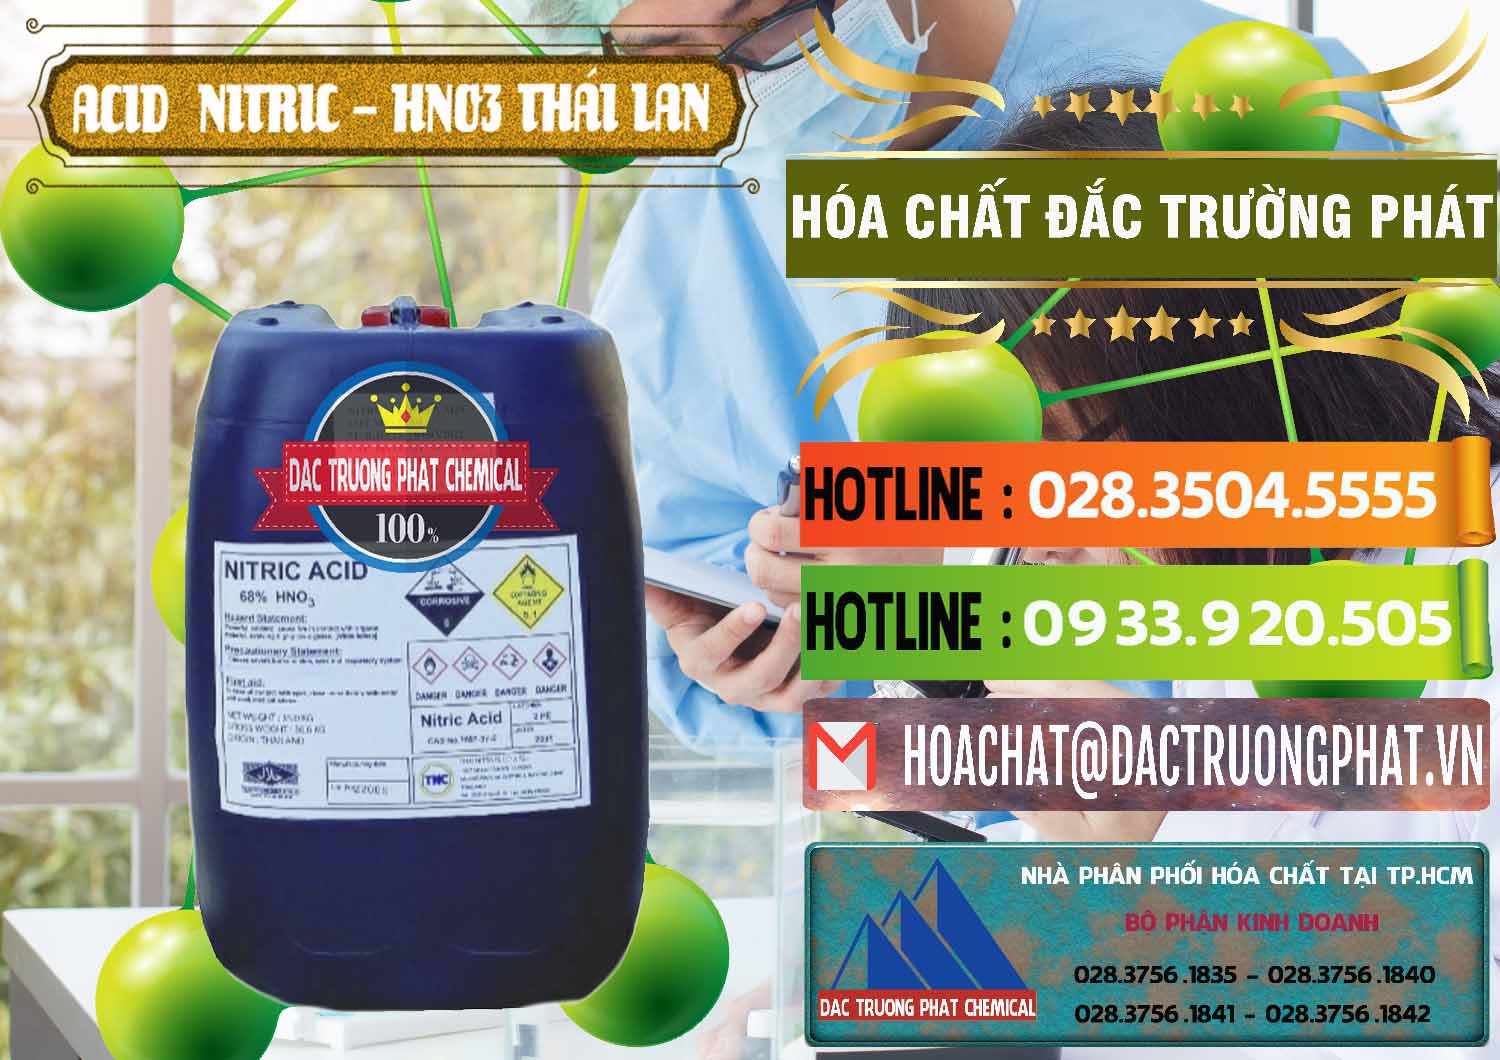 Cty chuyên cung cấp và bán Acid Nitric – Axit Nitric HNO3 Thái Lan Thailand - 0344 - Nơi cung ứng - phân phối hóa chất tại TP.HCM - cungcaphoachat.com.vn